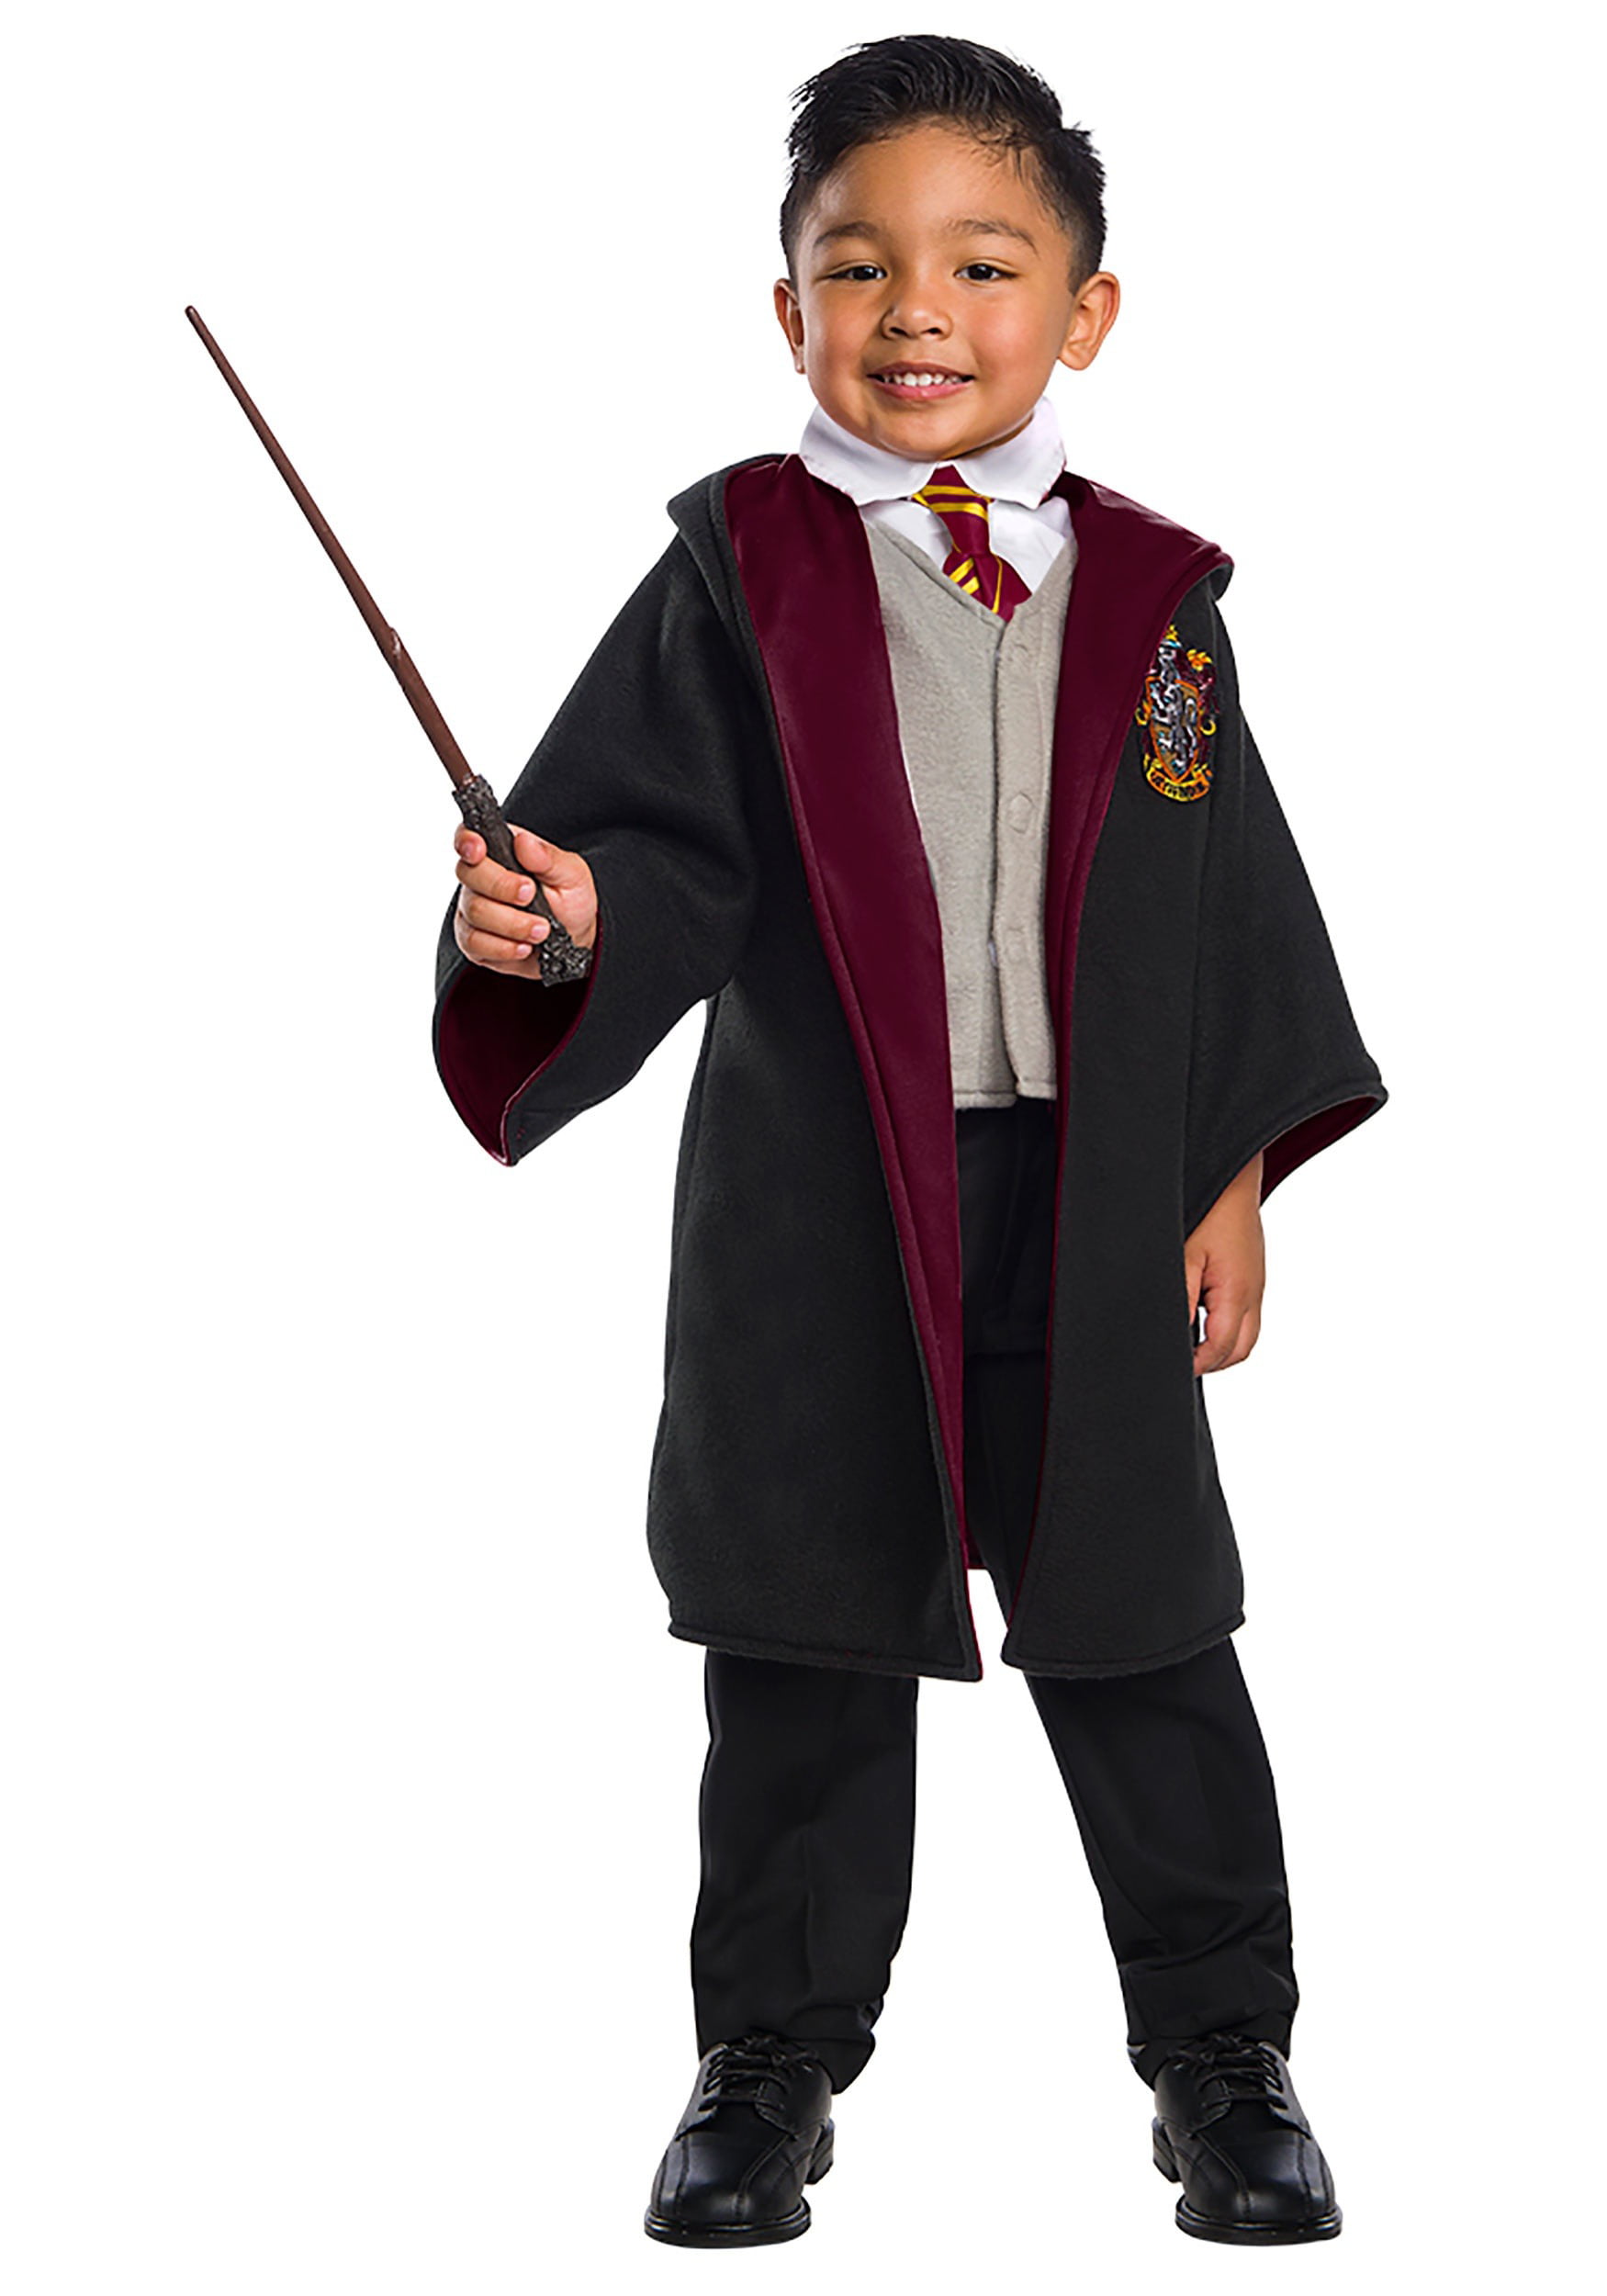 Harry Potter Gryffindor Toddler Black Robe Costume 